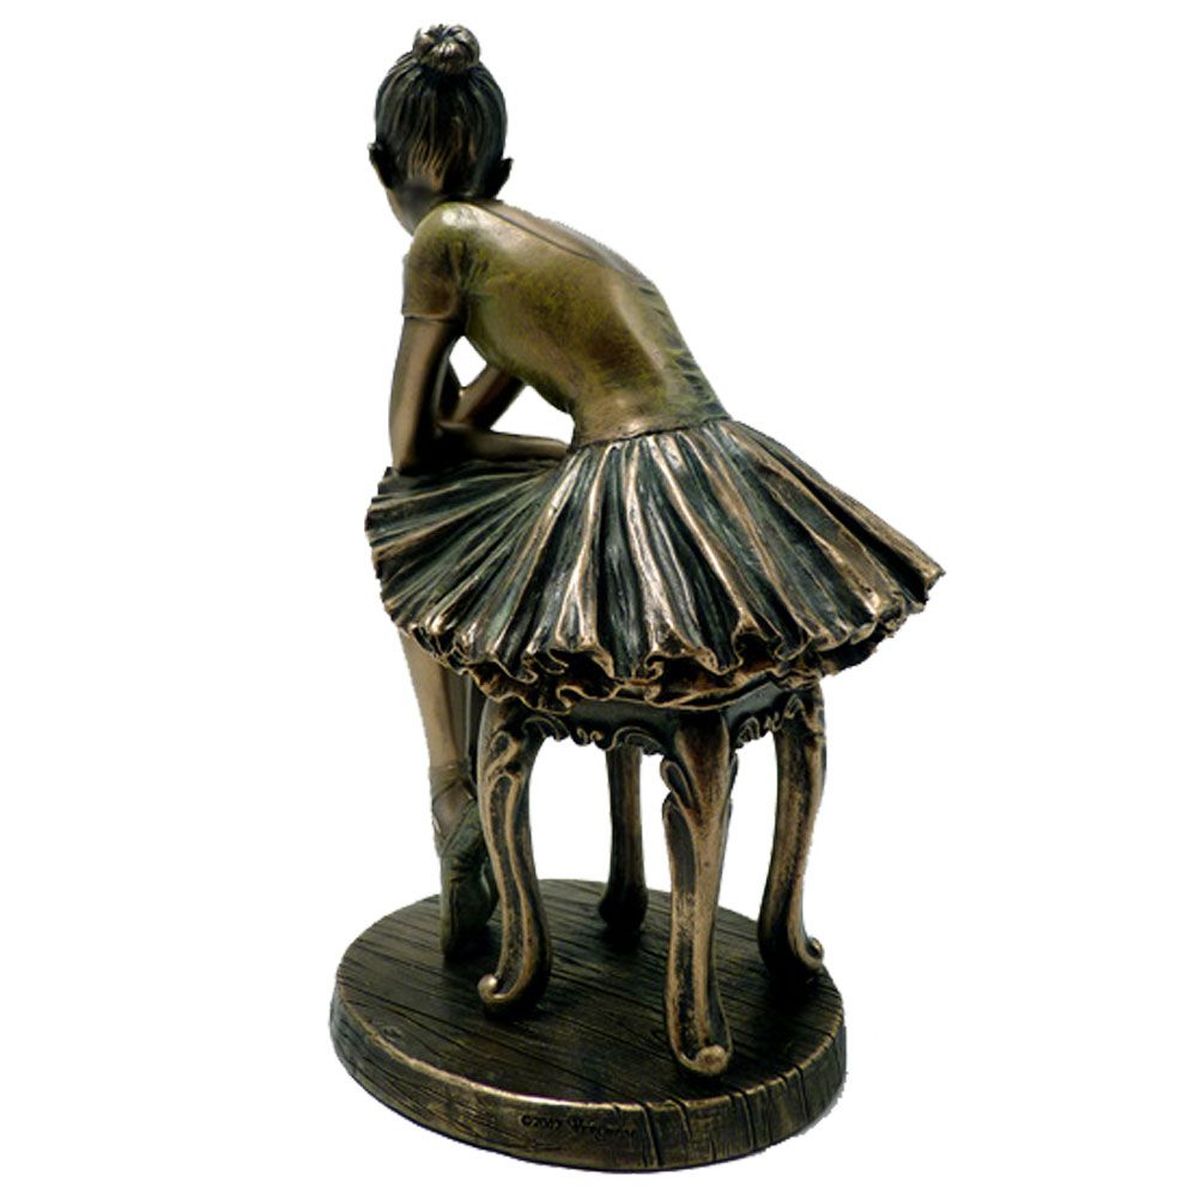 Statuette Danseuse de collection aspect bronze 19 cm